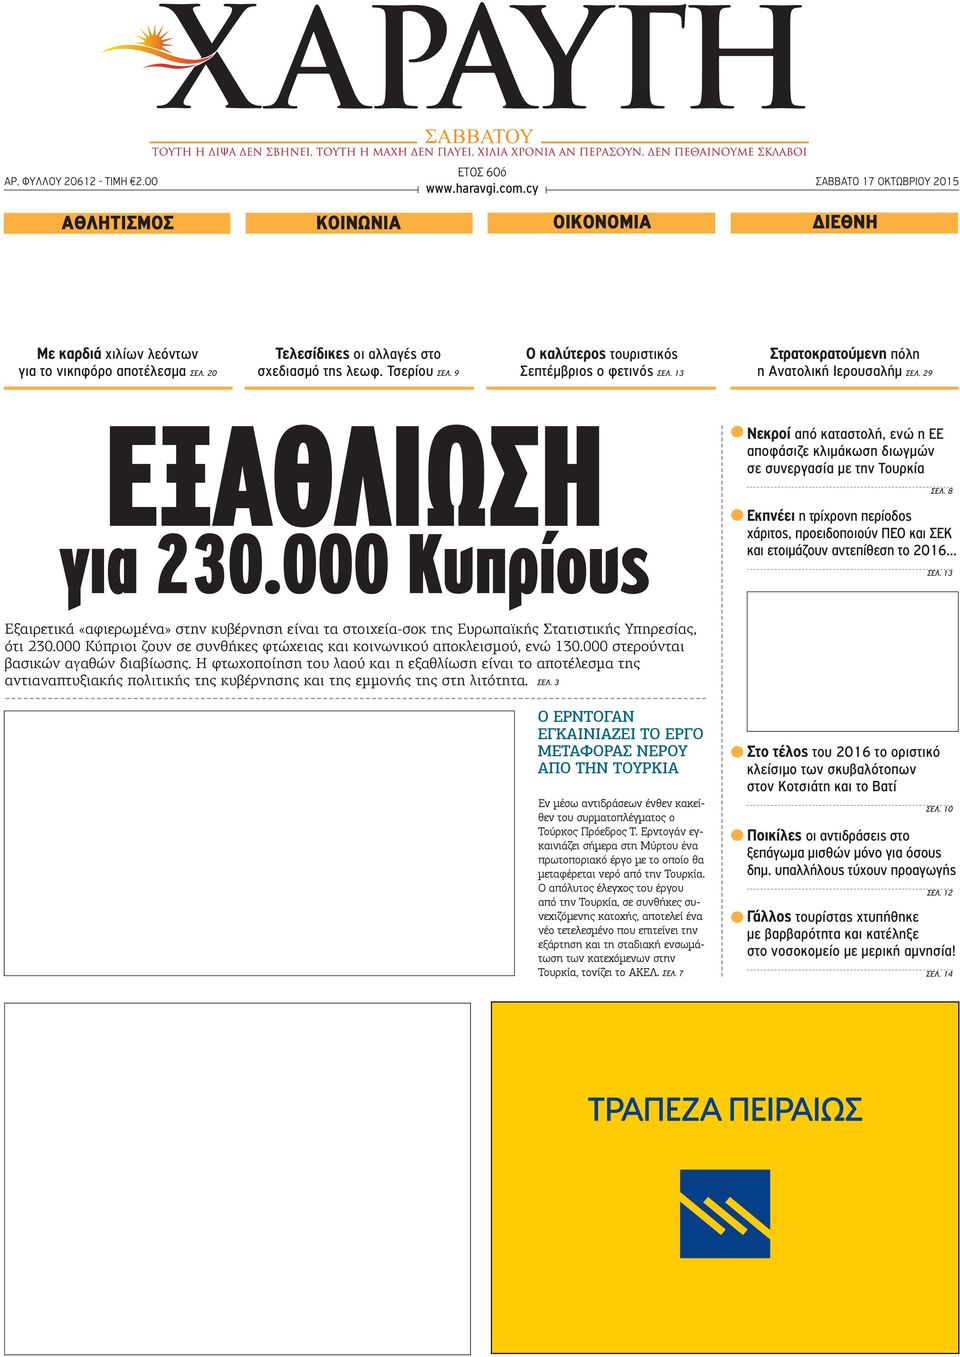 000 Κυπρίους Νεκροί από καταστολή, ενώ η ΕΕ αποφάσιζε κλιμάκωση διωγμών σε συνεργασία με την Τουρκία ΣΕΛ.